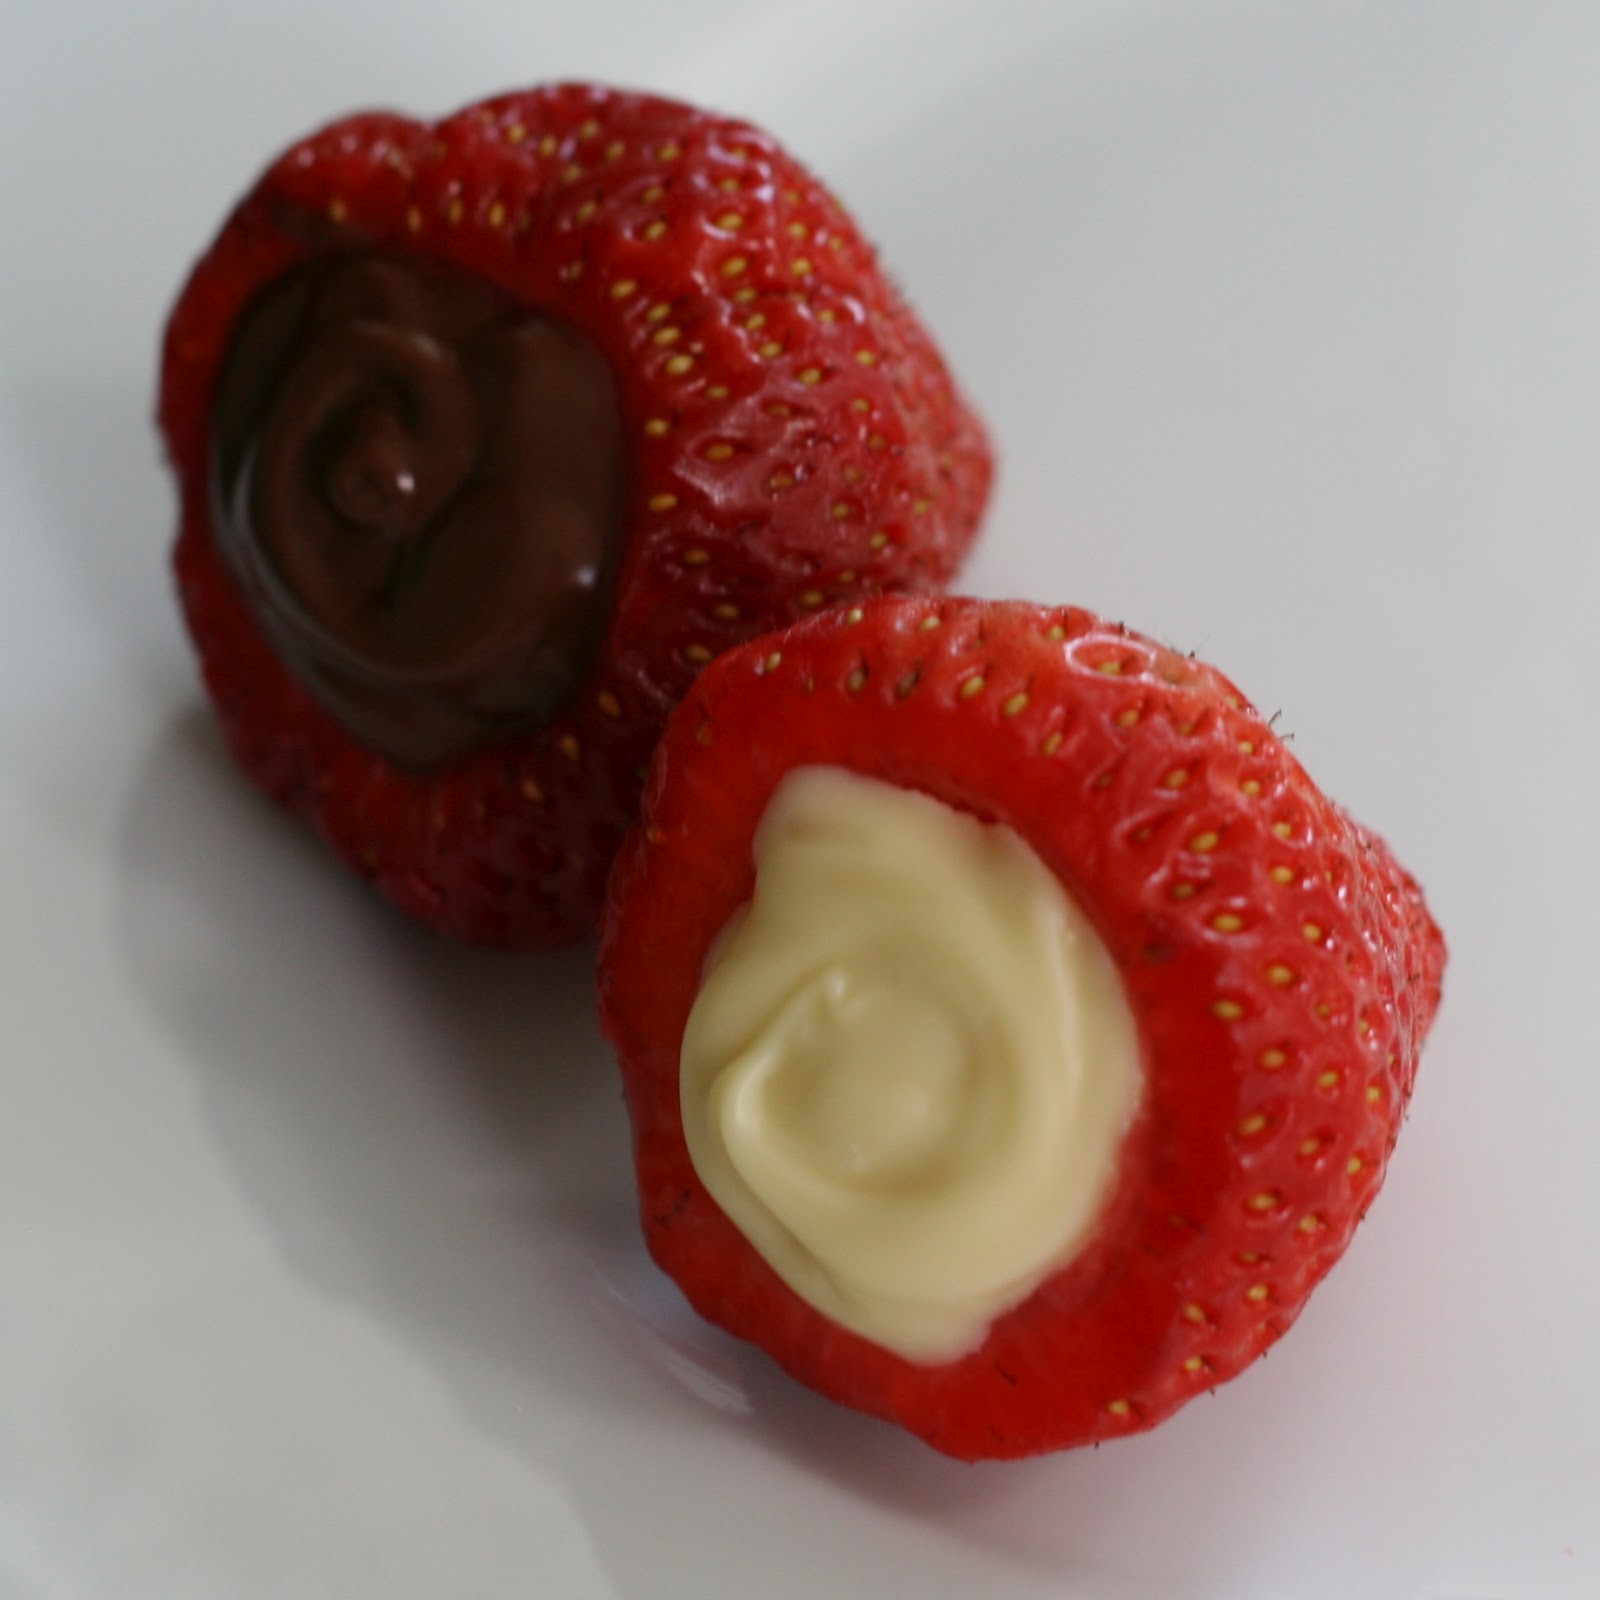 Pâtisserie Nadine: Schoko-gefüllte Erdbeeren: Schokoerdbeeren mal anders!